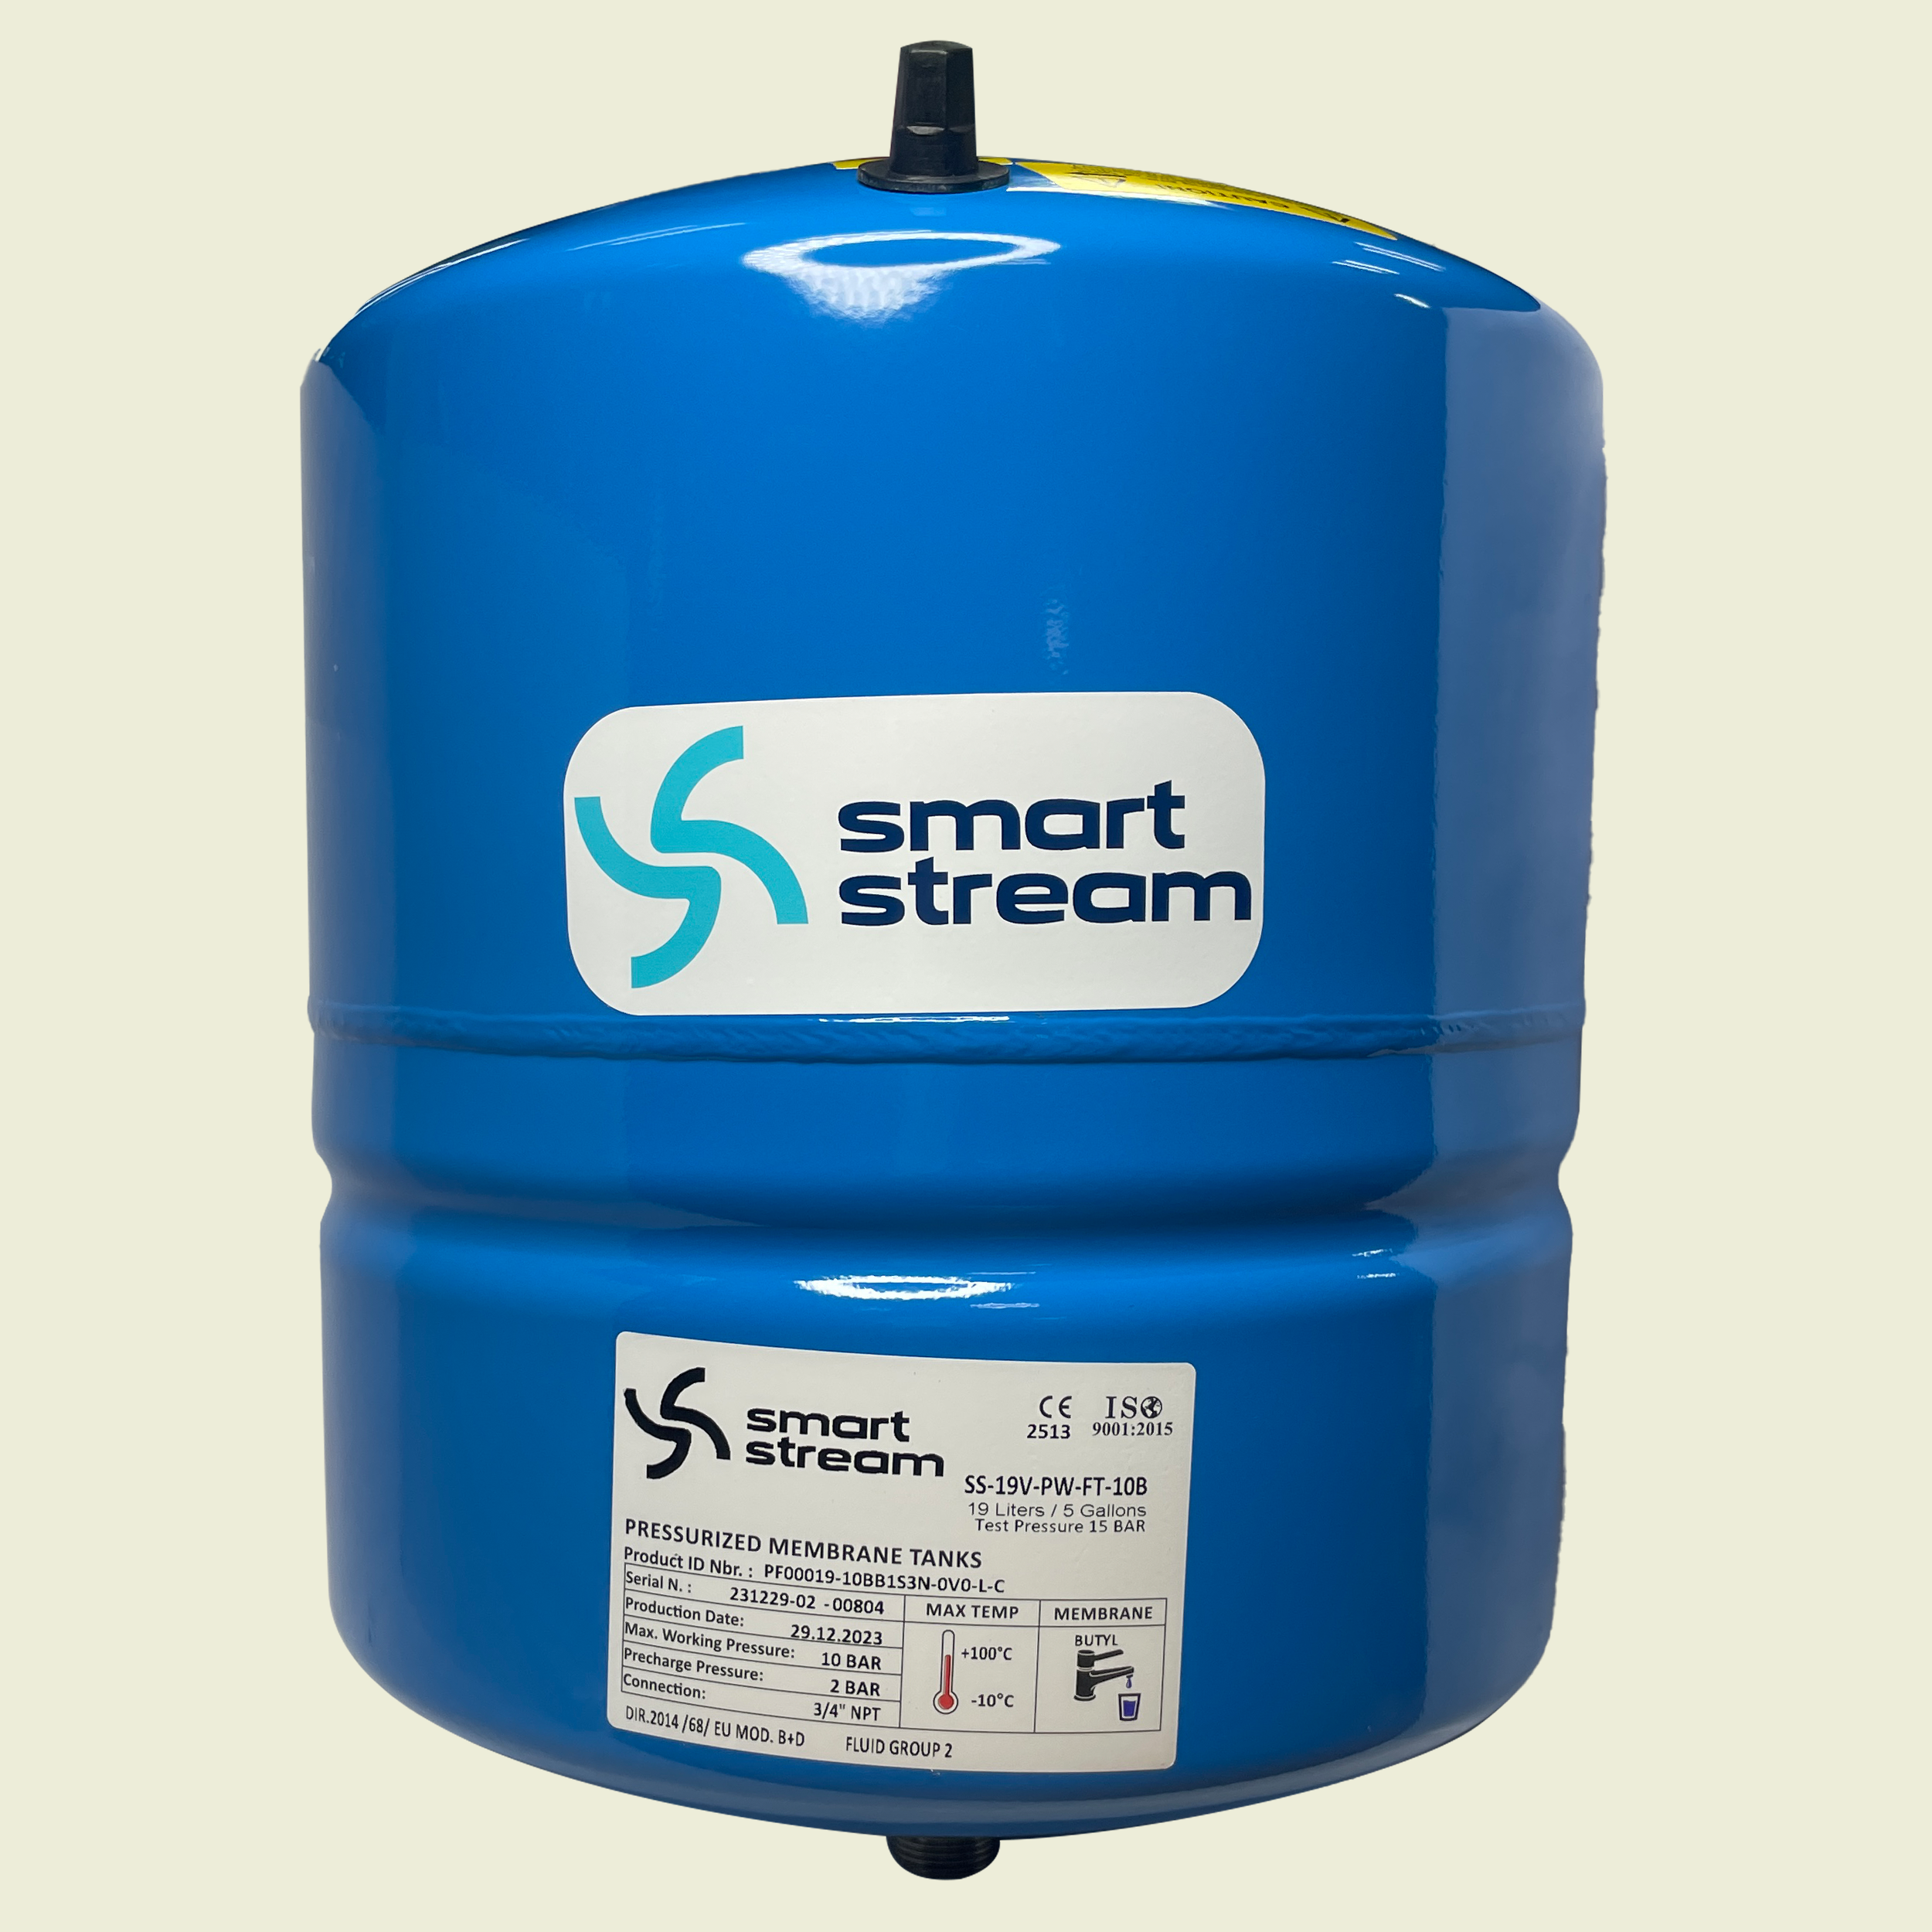 Smart Stream 19L Tank Pressure Vessel Trinidad